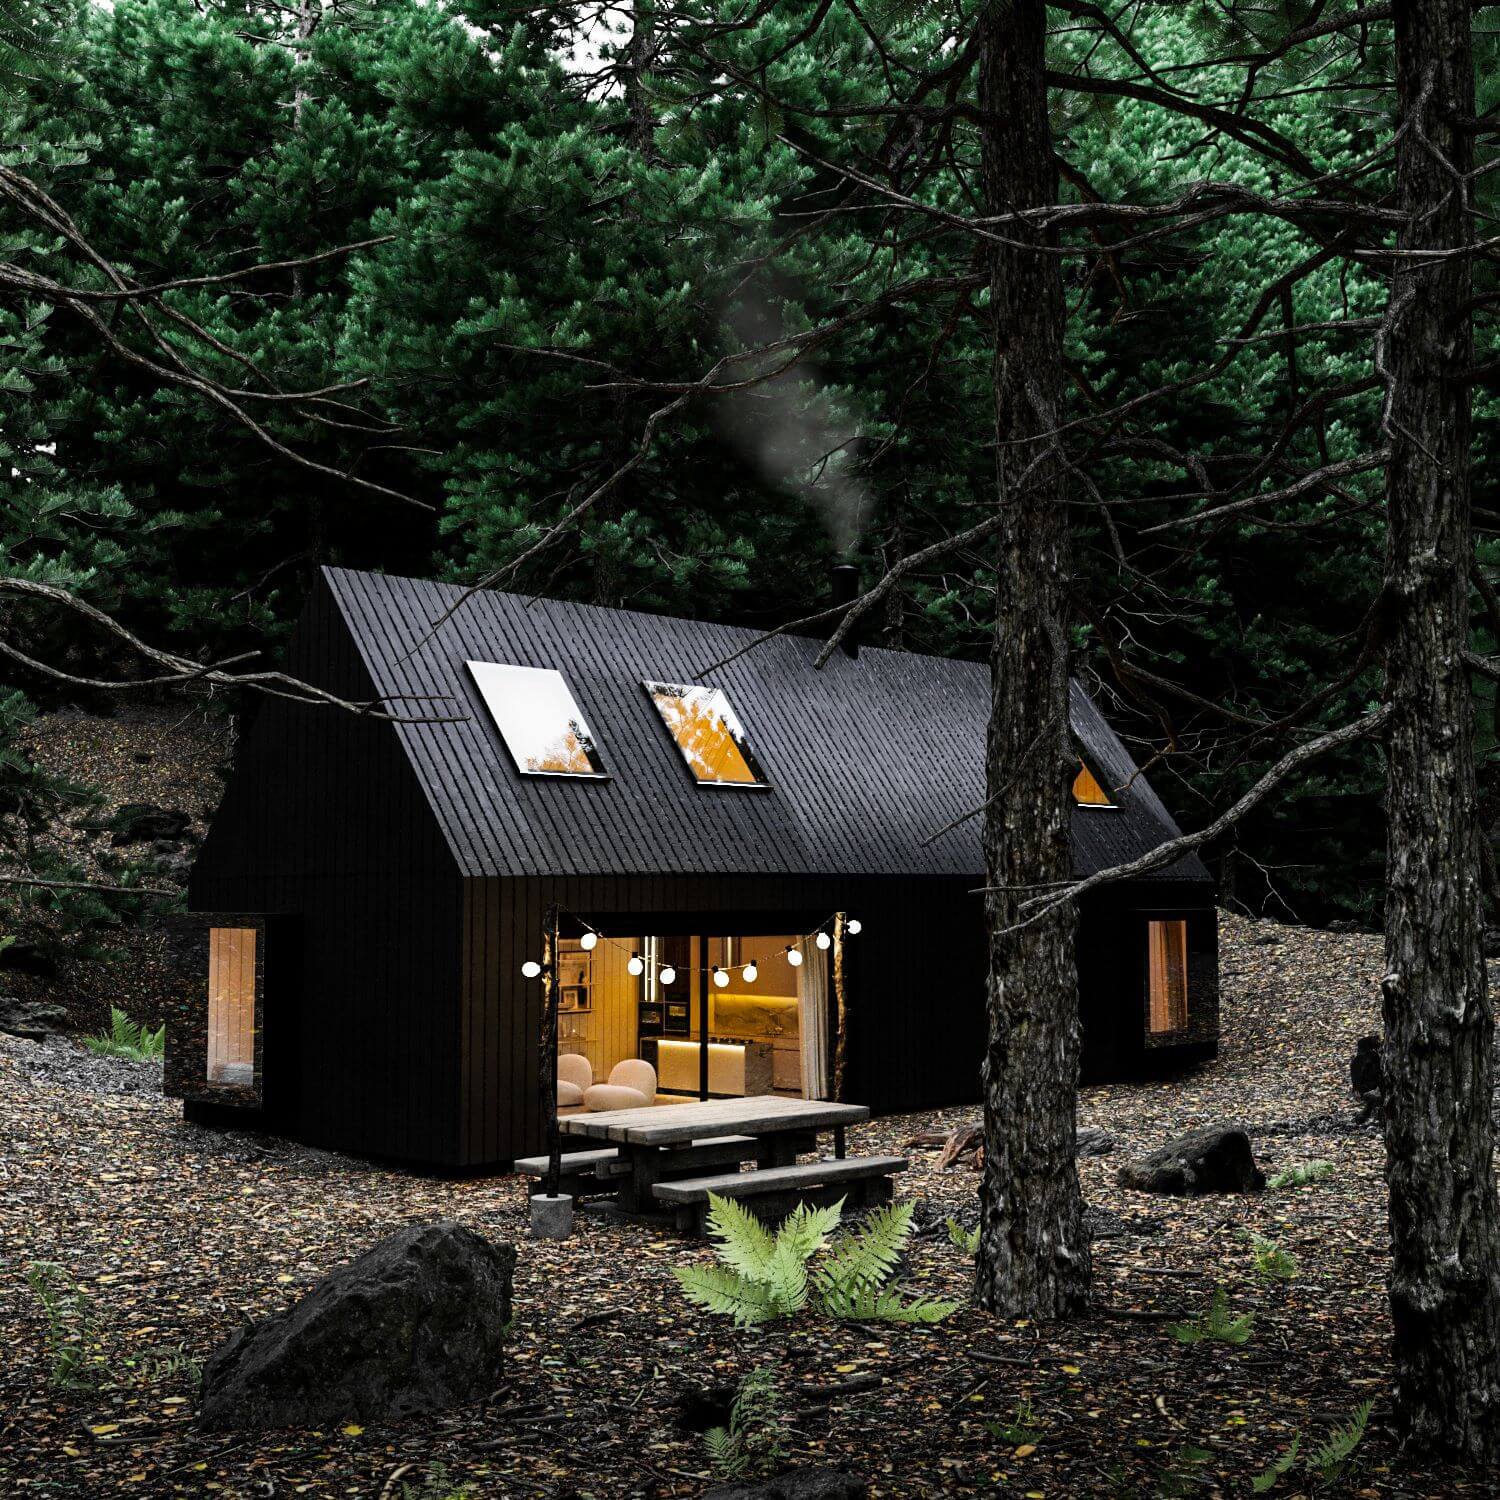 Leśna chata w Quebecu w Kanadzie by Iltecor Studio